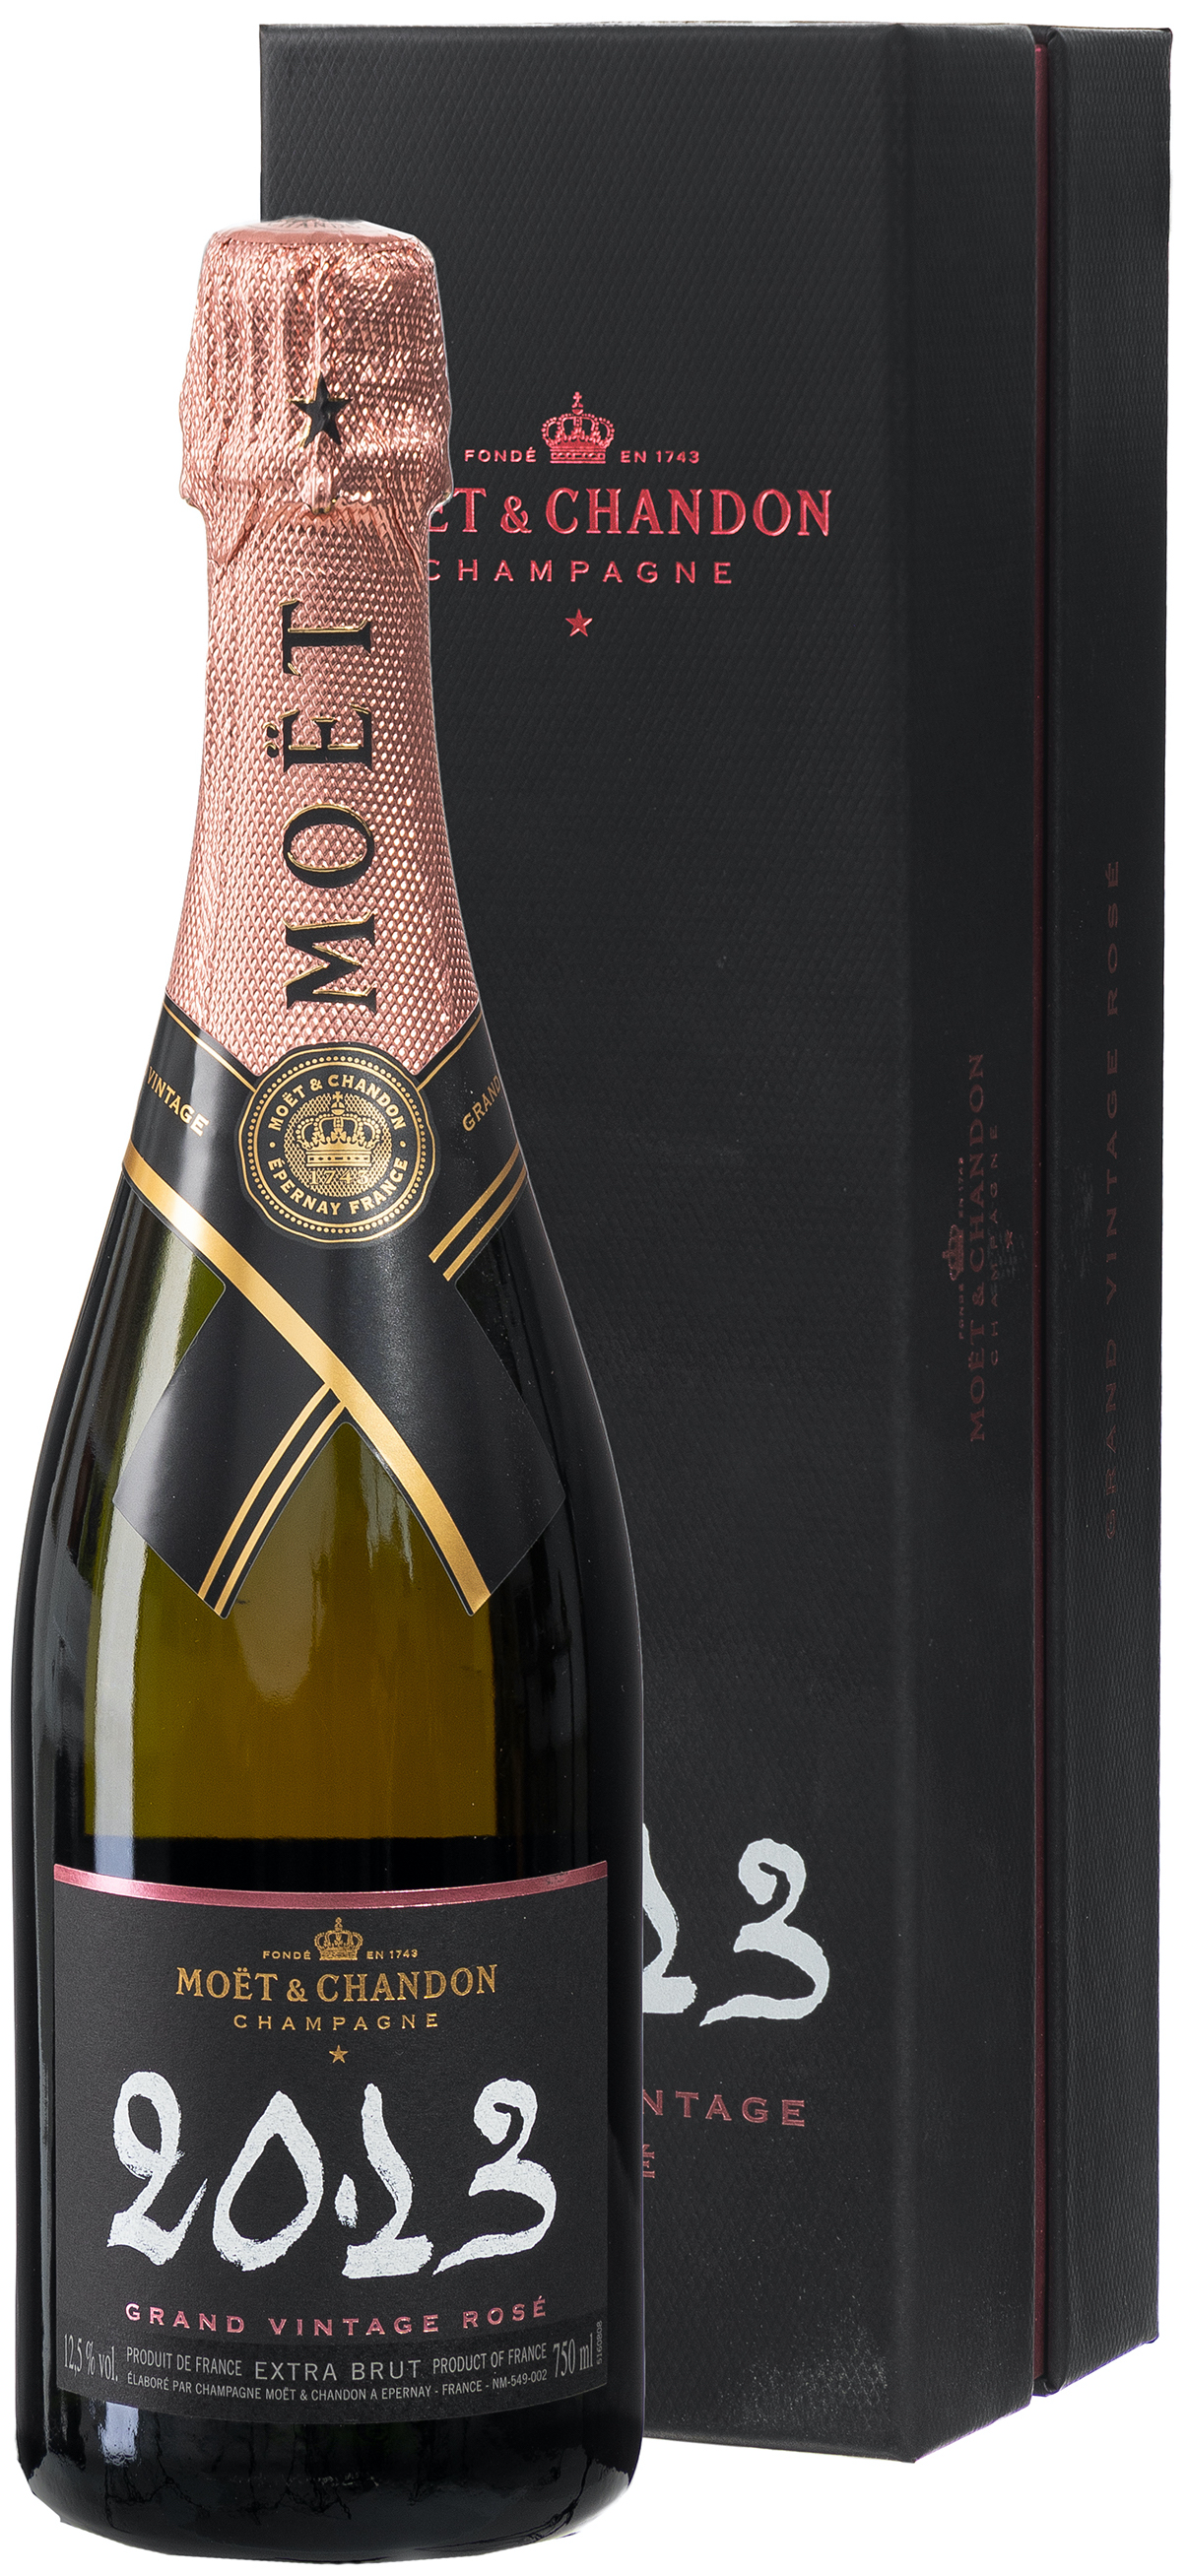 Moët & Chandon Grand Vintage Rosé 2013 Champagner 12,5% vol. 0,75L